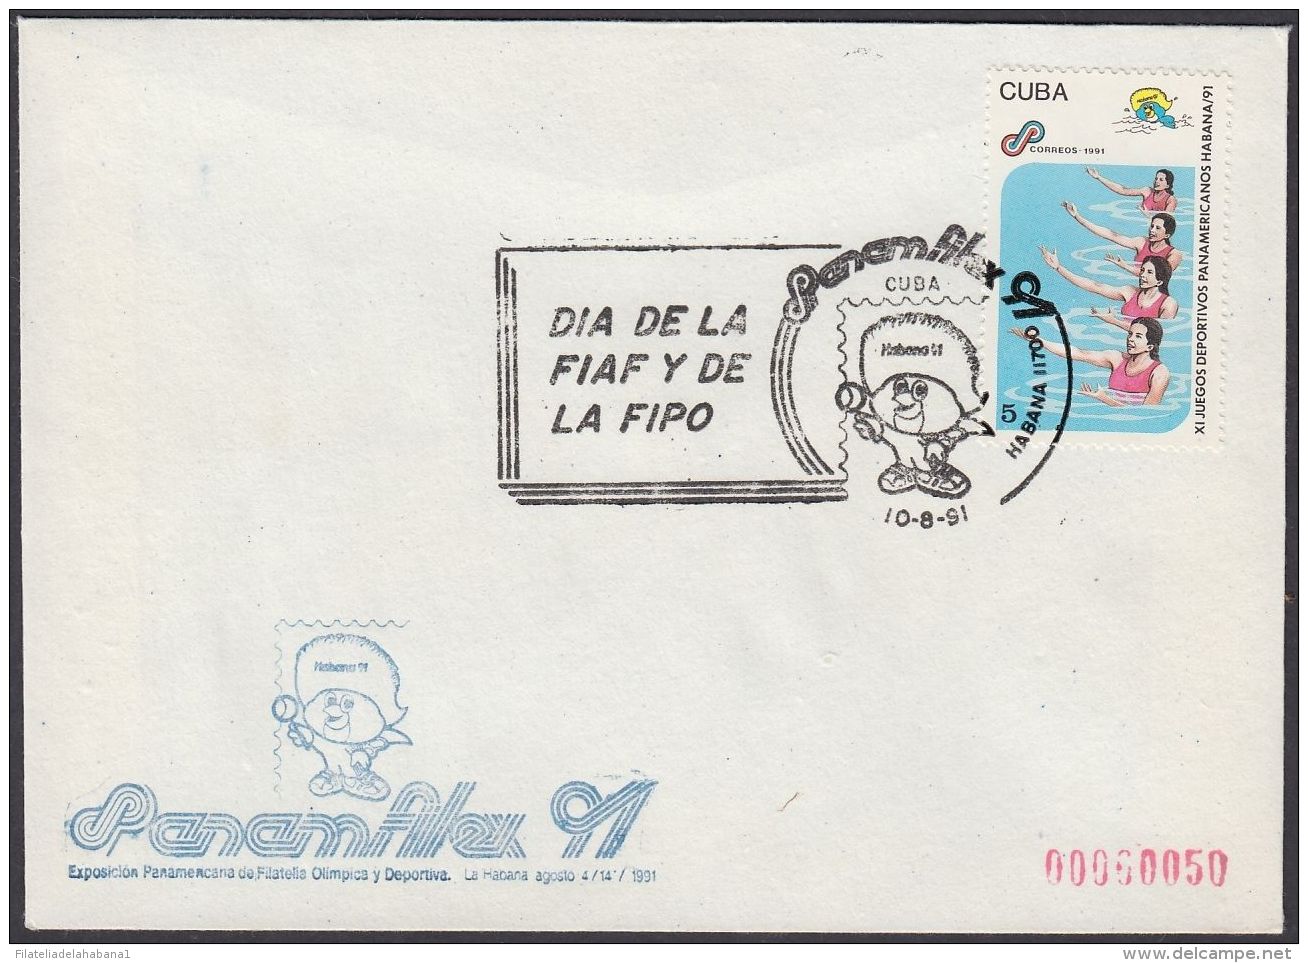 1991-CE-41 CUBA 1991 SPECIAL CANCEL. PANAMFILEX EXPO. DIA DE LA FIAF Y LA FIPO. - Cartas & Documentos